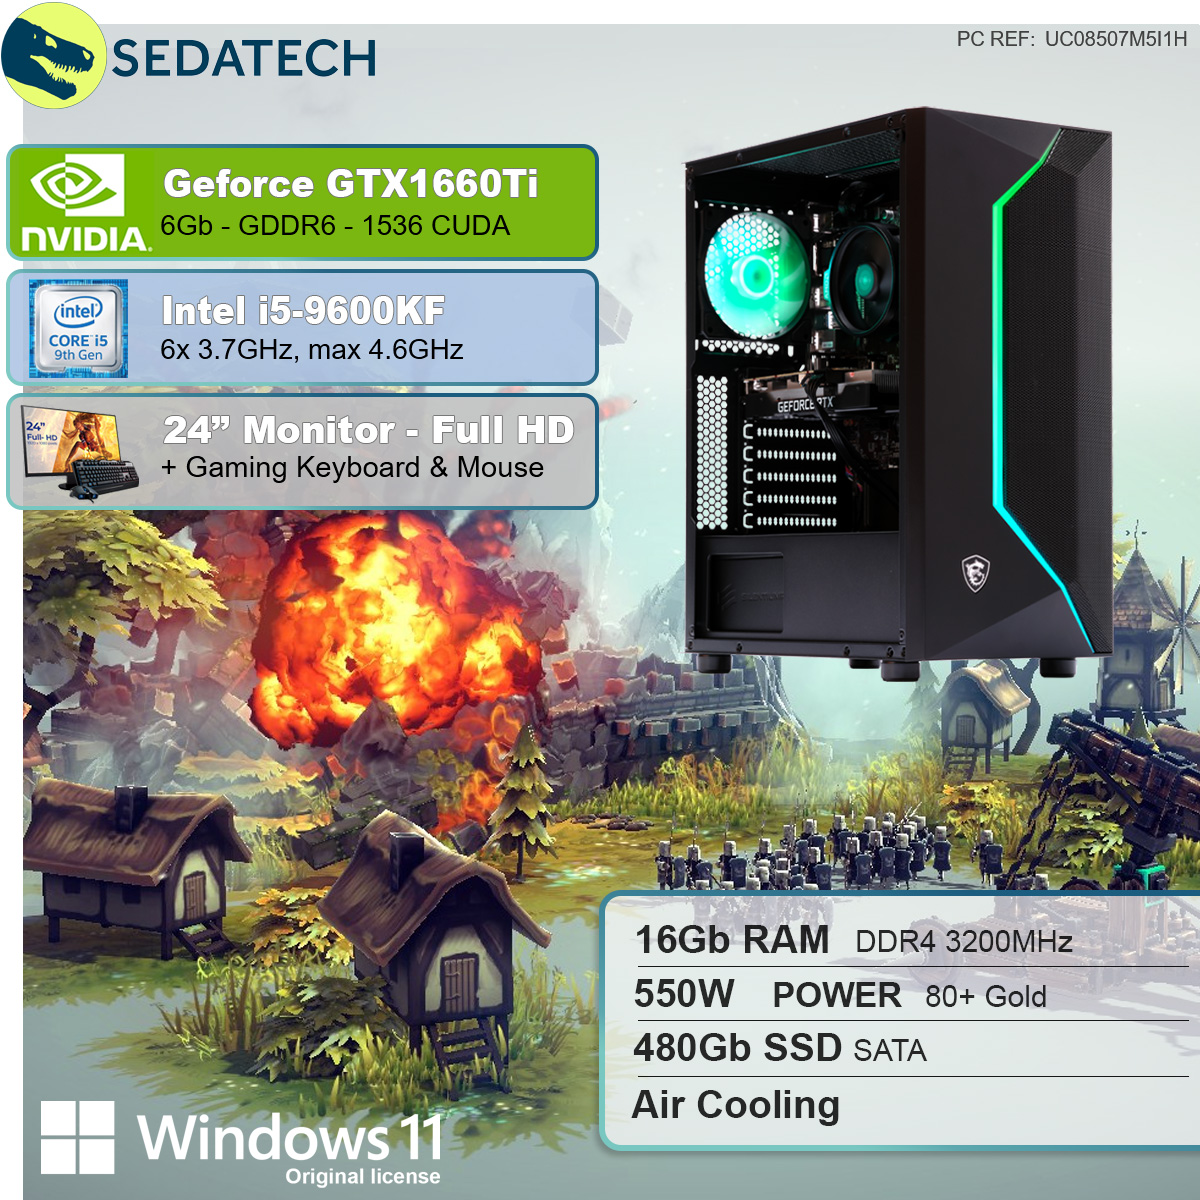 Intel 480 SEDATECH PC 16 i5-9600KF SSD, Intel GB GTX1660Ti, Prozessor, 6 GB mit GB RAM, i5-9600KF, Gaming Geforce